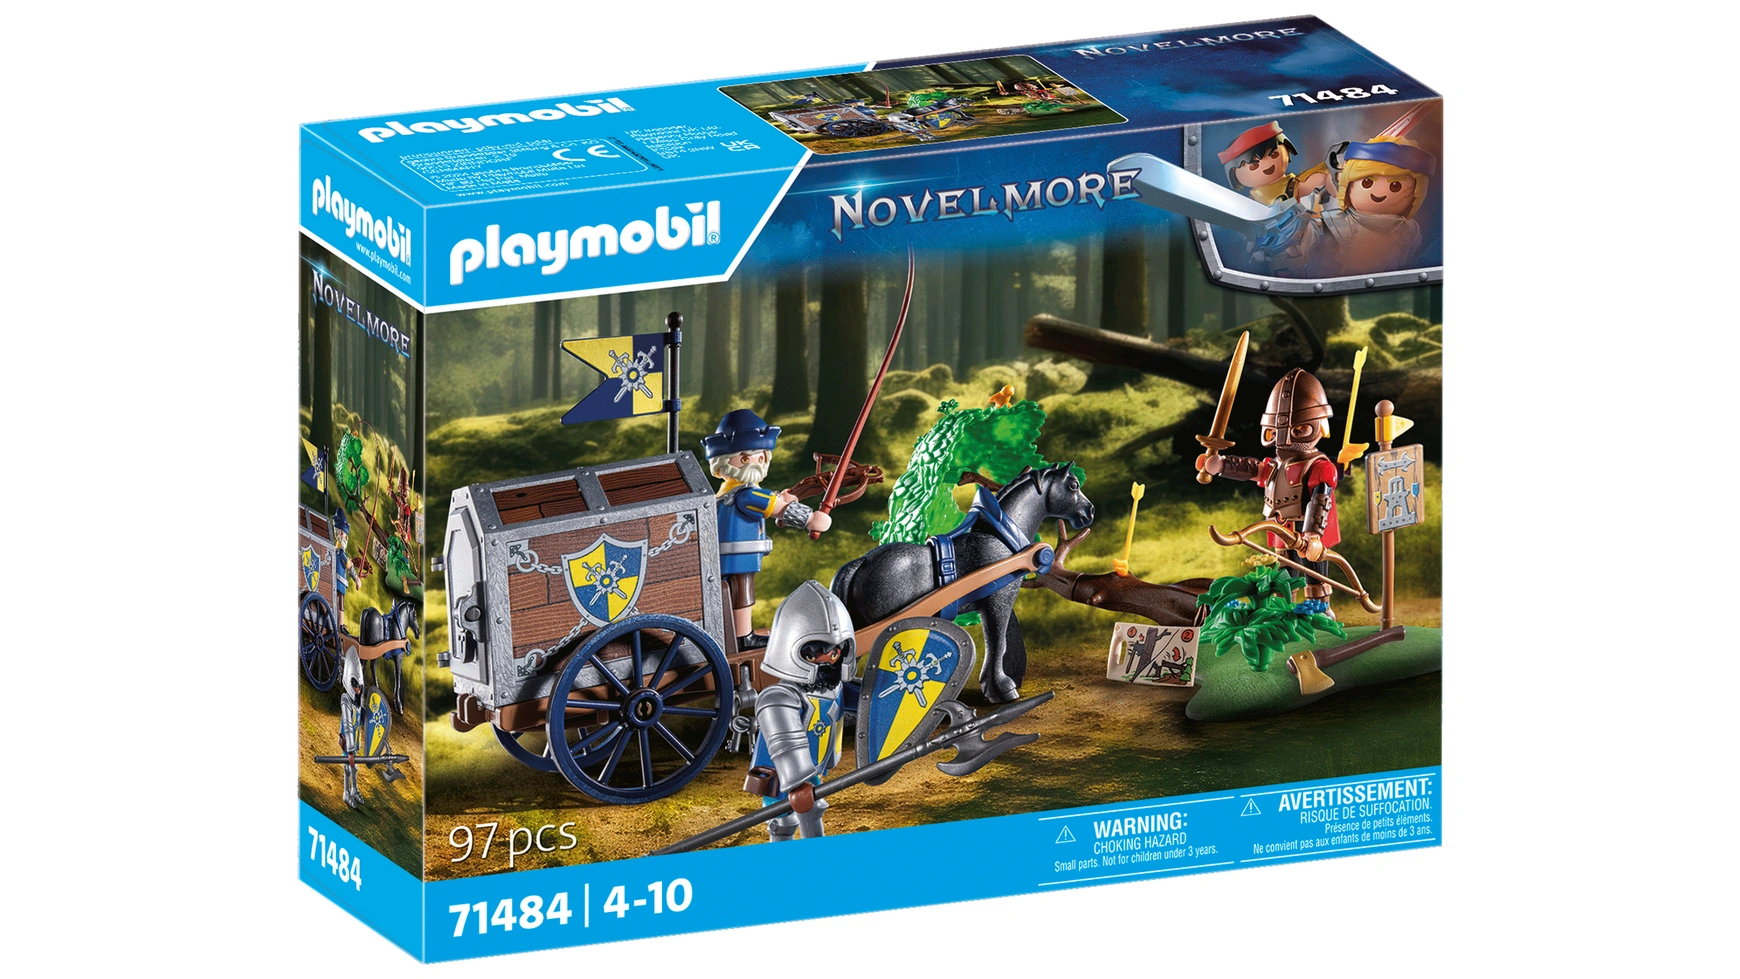 рыцари юбилейный рыцарь playmobil Novelmore рейд грузового транспорта Playmobil